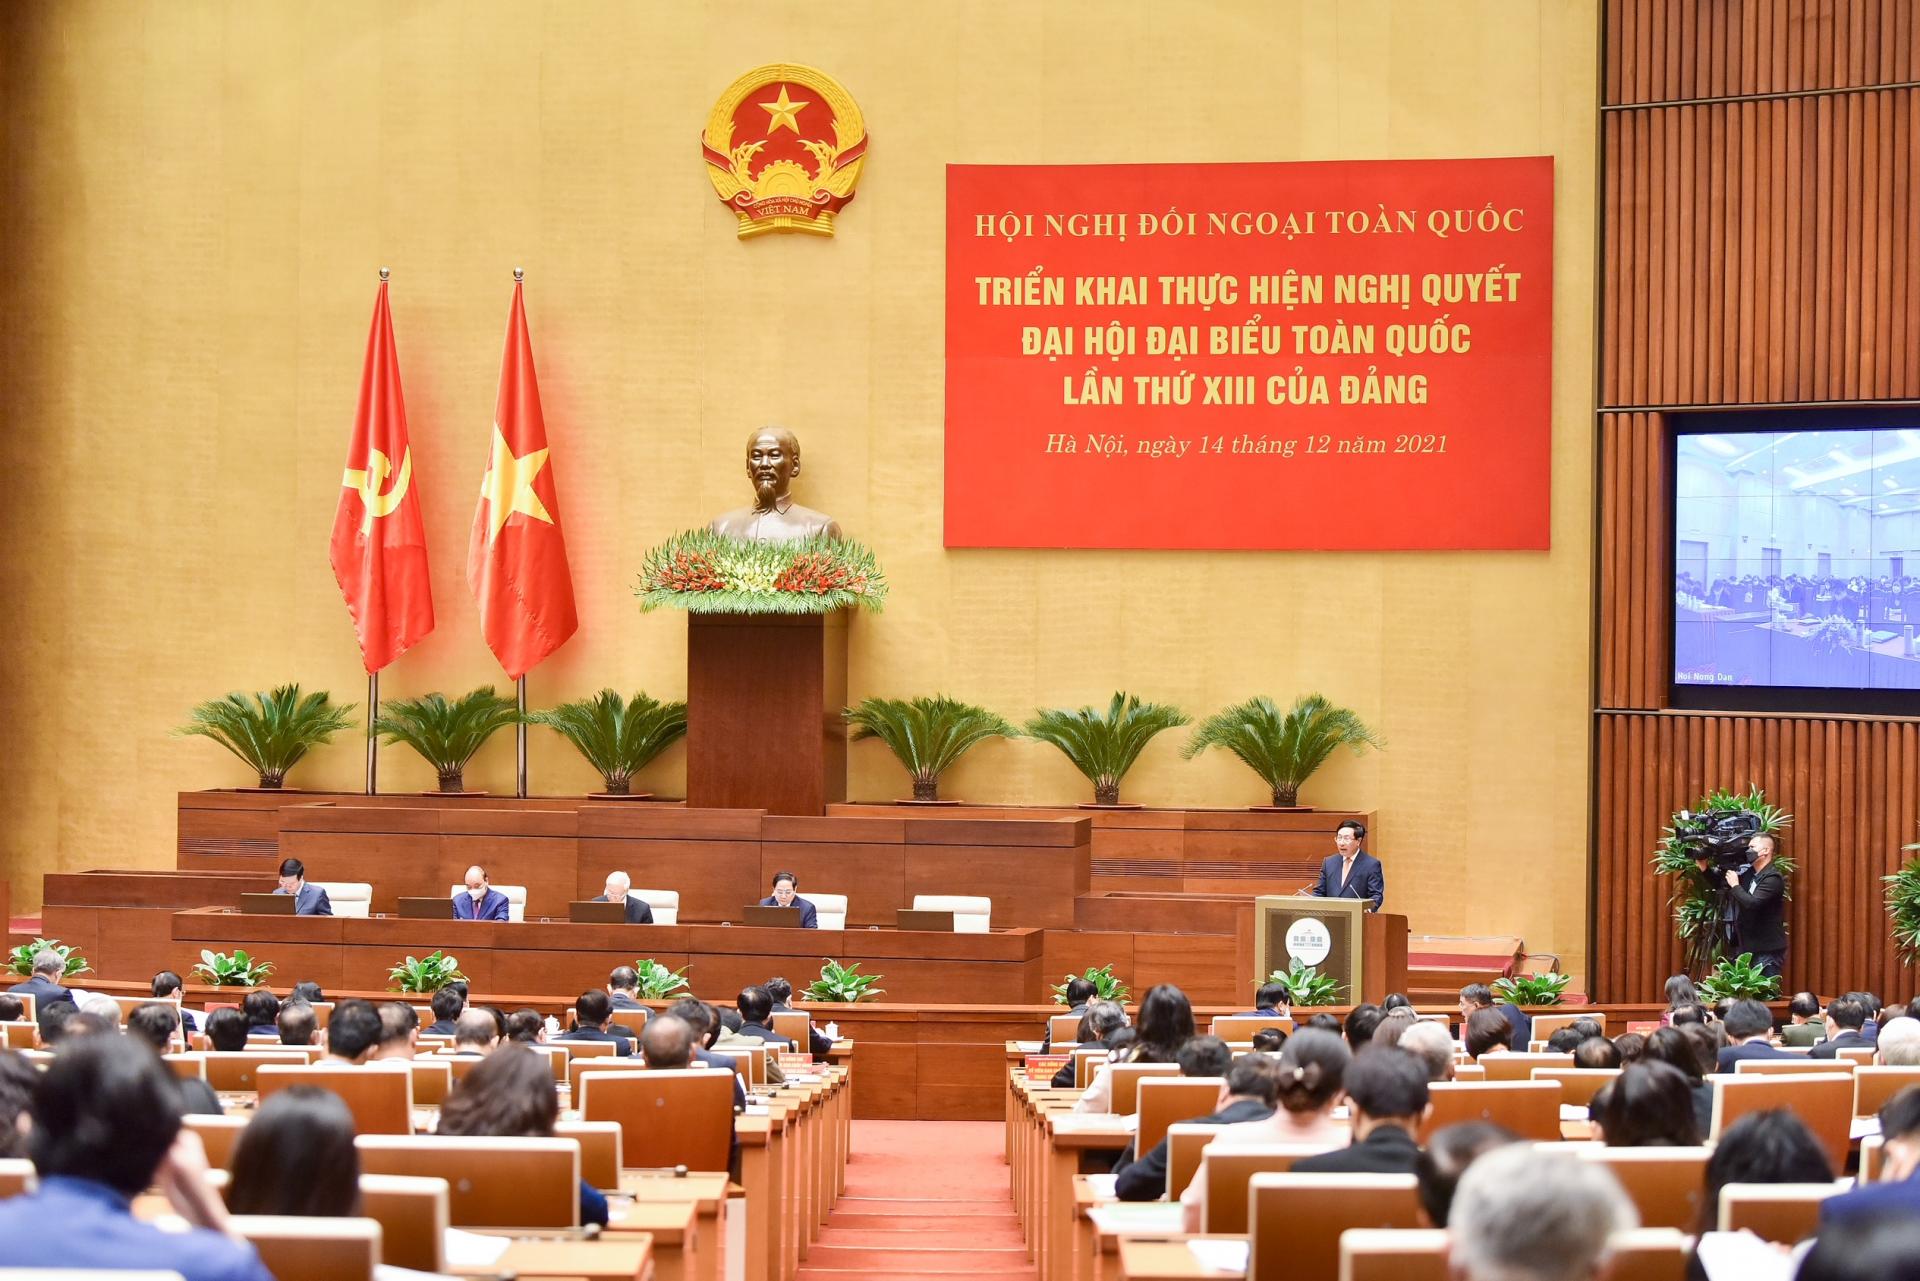 Đây là lần đầu tiên kể từ khi thành lập Đảng Cộng sản Việt Nam cũng như từ khi nước Việt Nam dân chủ Cộng hòa ra đời, Đảng ta tổ chức một Hội nghị chuyên sâu về công tác đối ngoại với quy mô toàn quốc. 